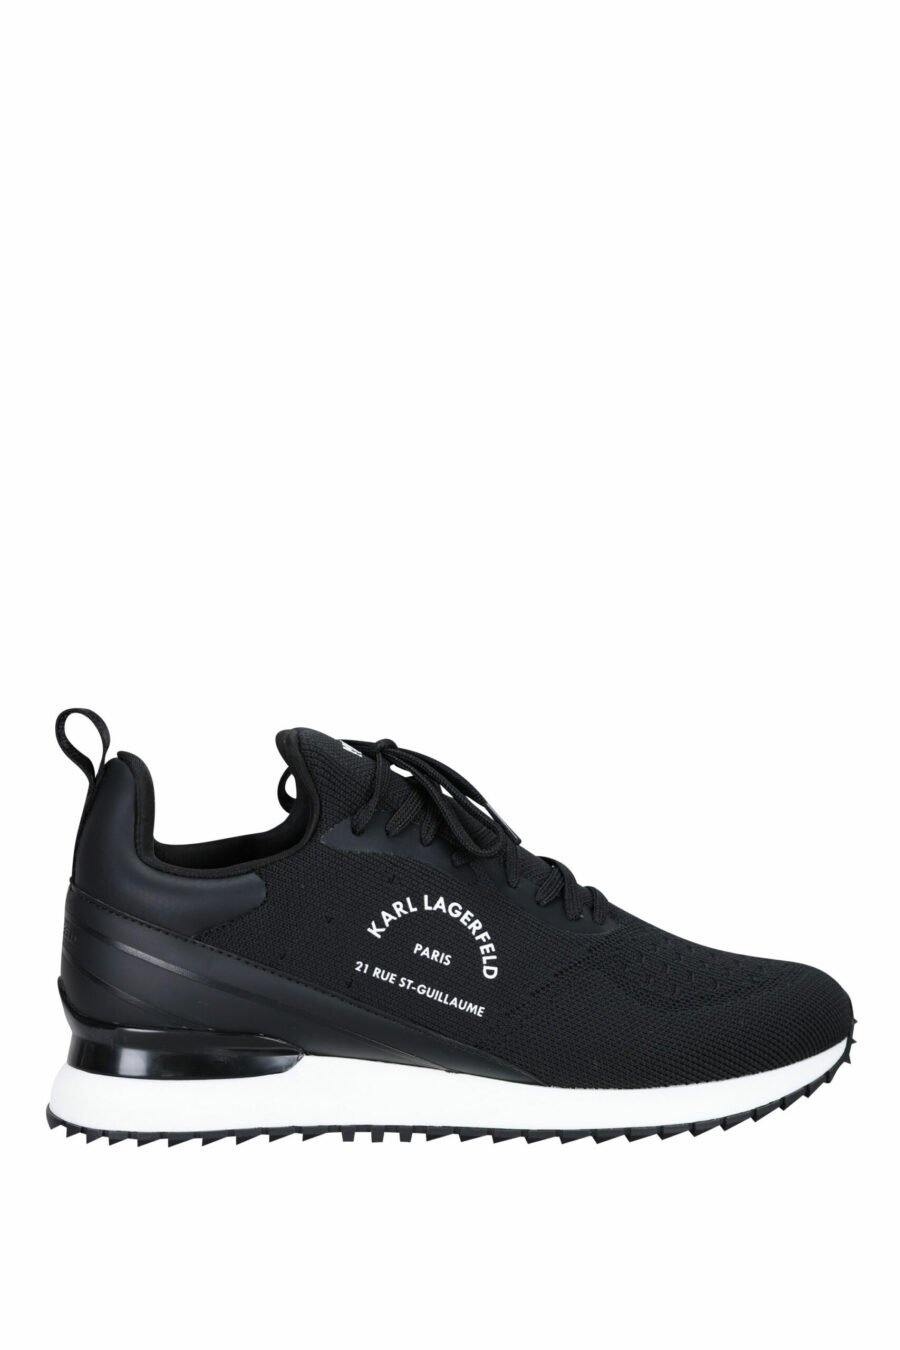 Schwarze "velocitor" Schuhe mit weißem "rue st guillaume" Logo - 5059529326370 skaliert